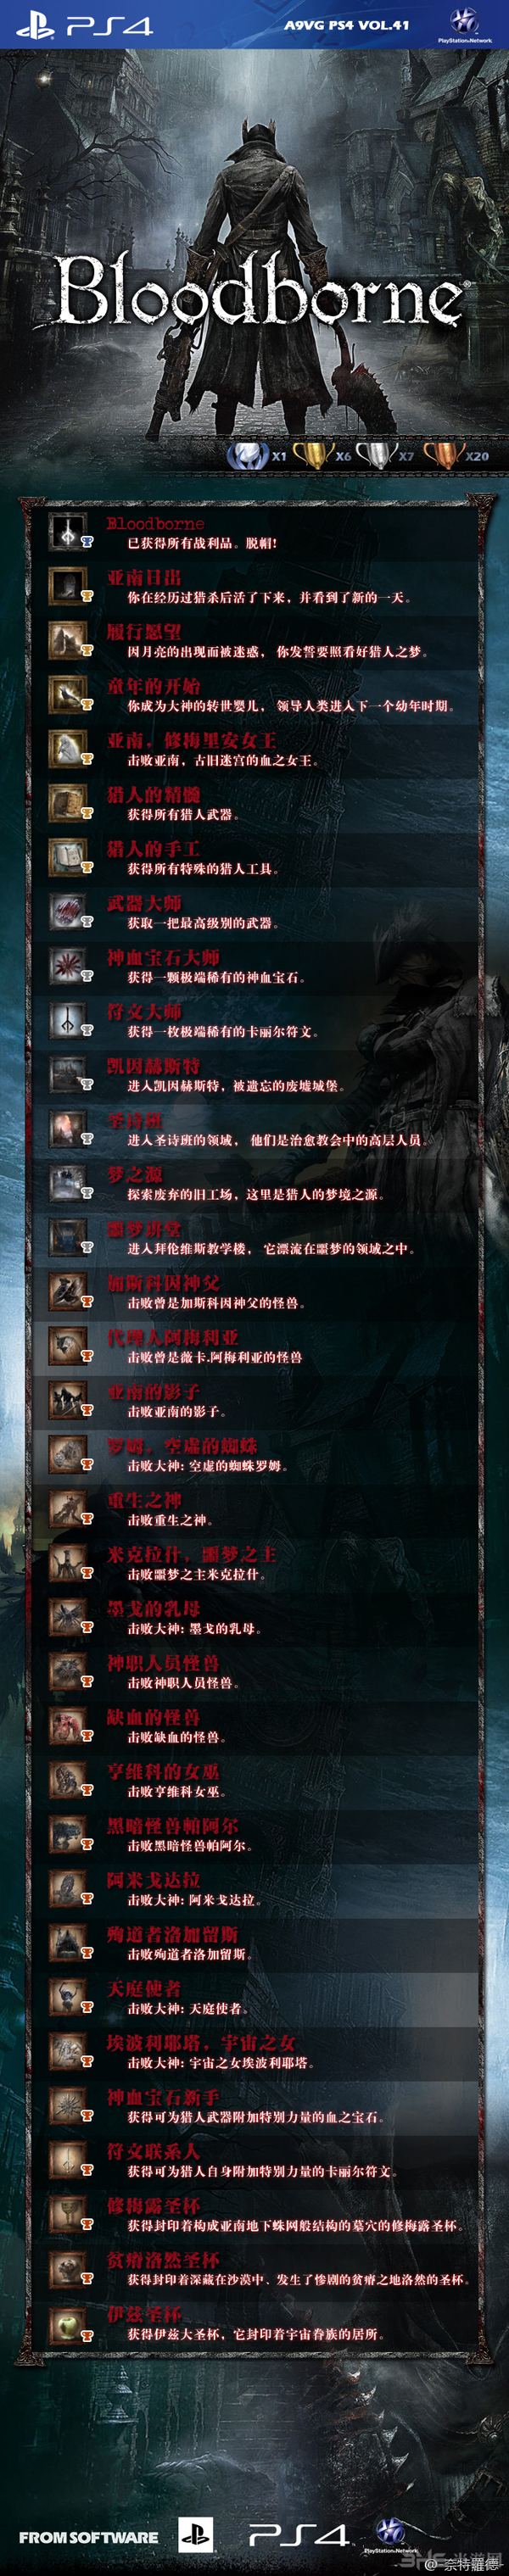 血源诅咒PS4中文成就奖品列表